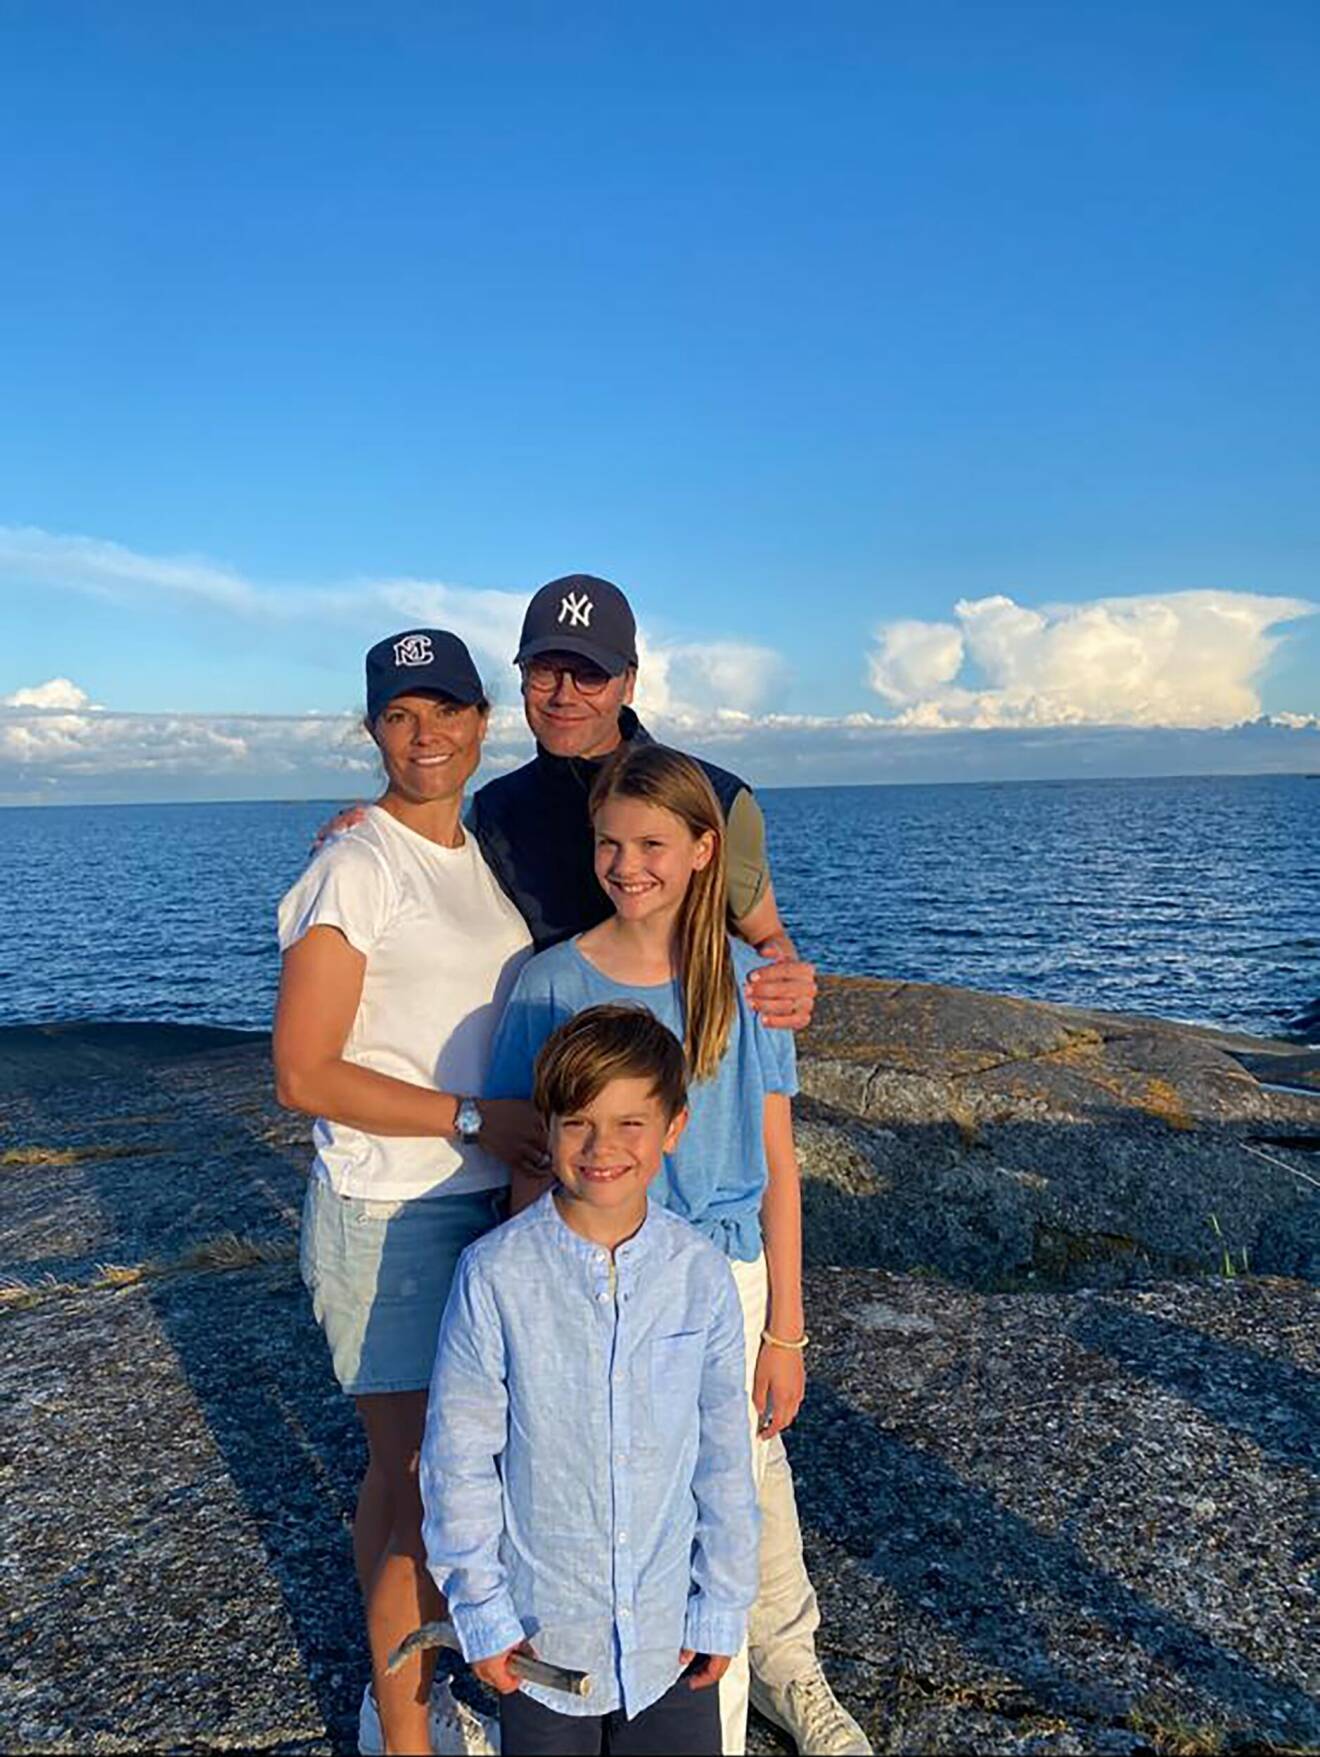 Kronprinsessfamiljen på semestern framför havet